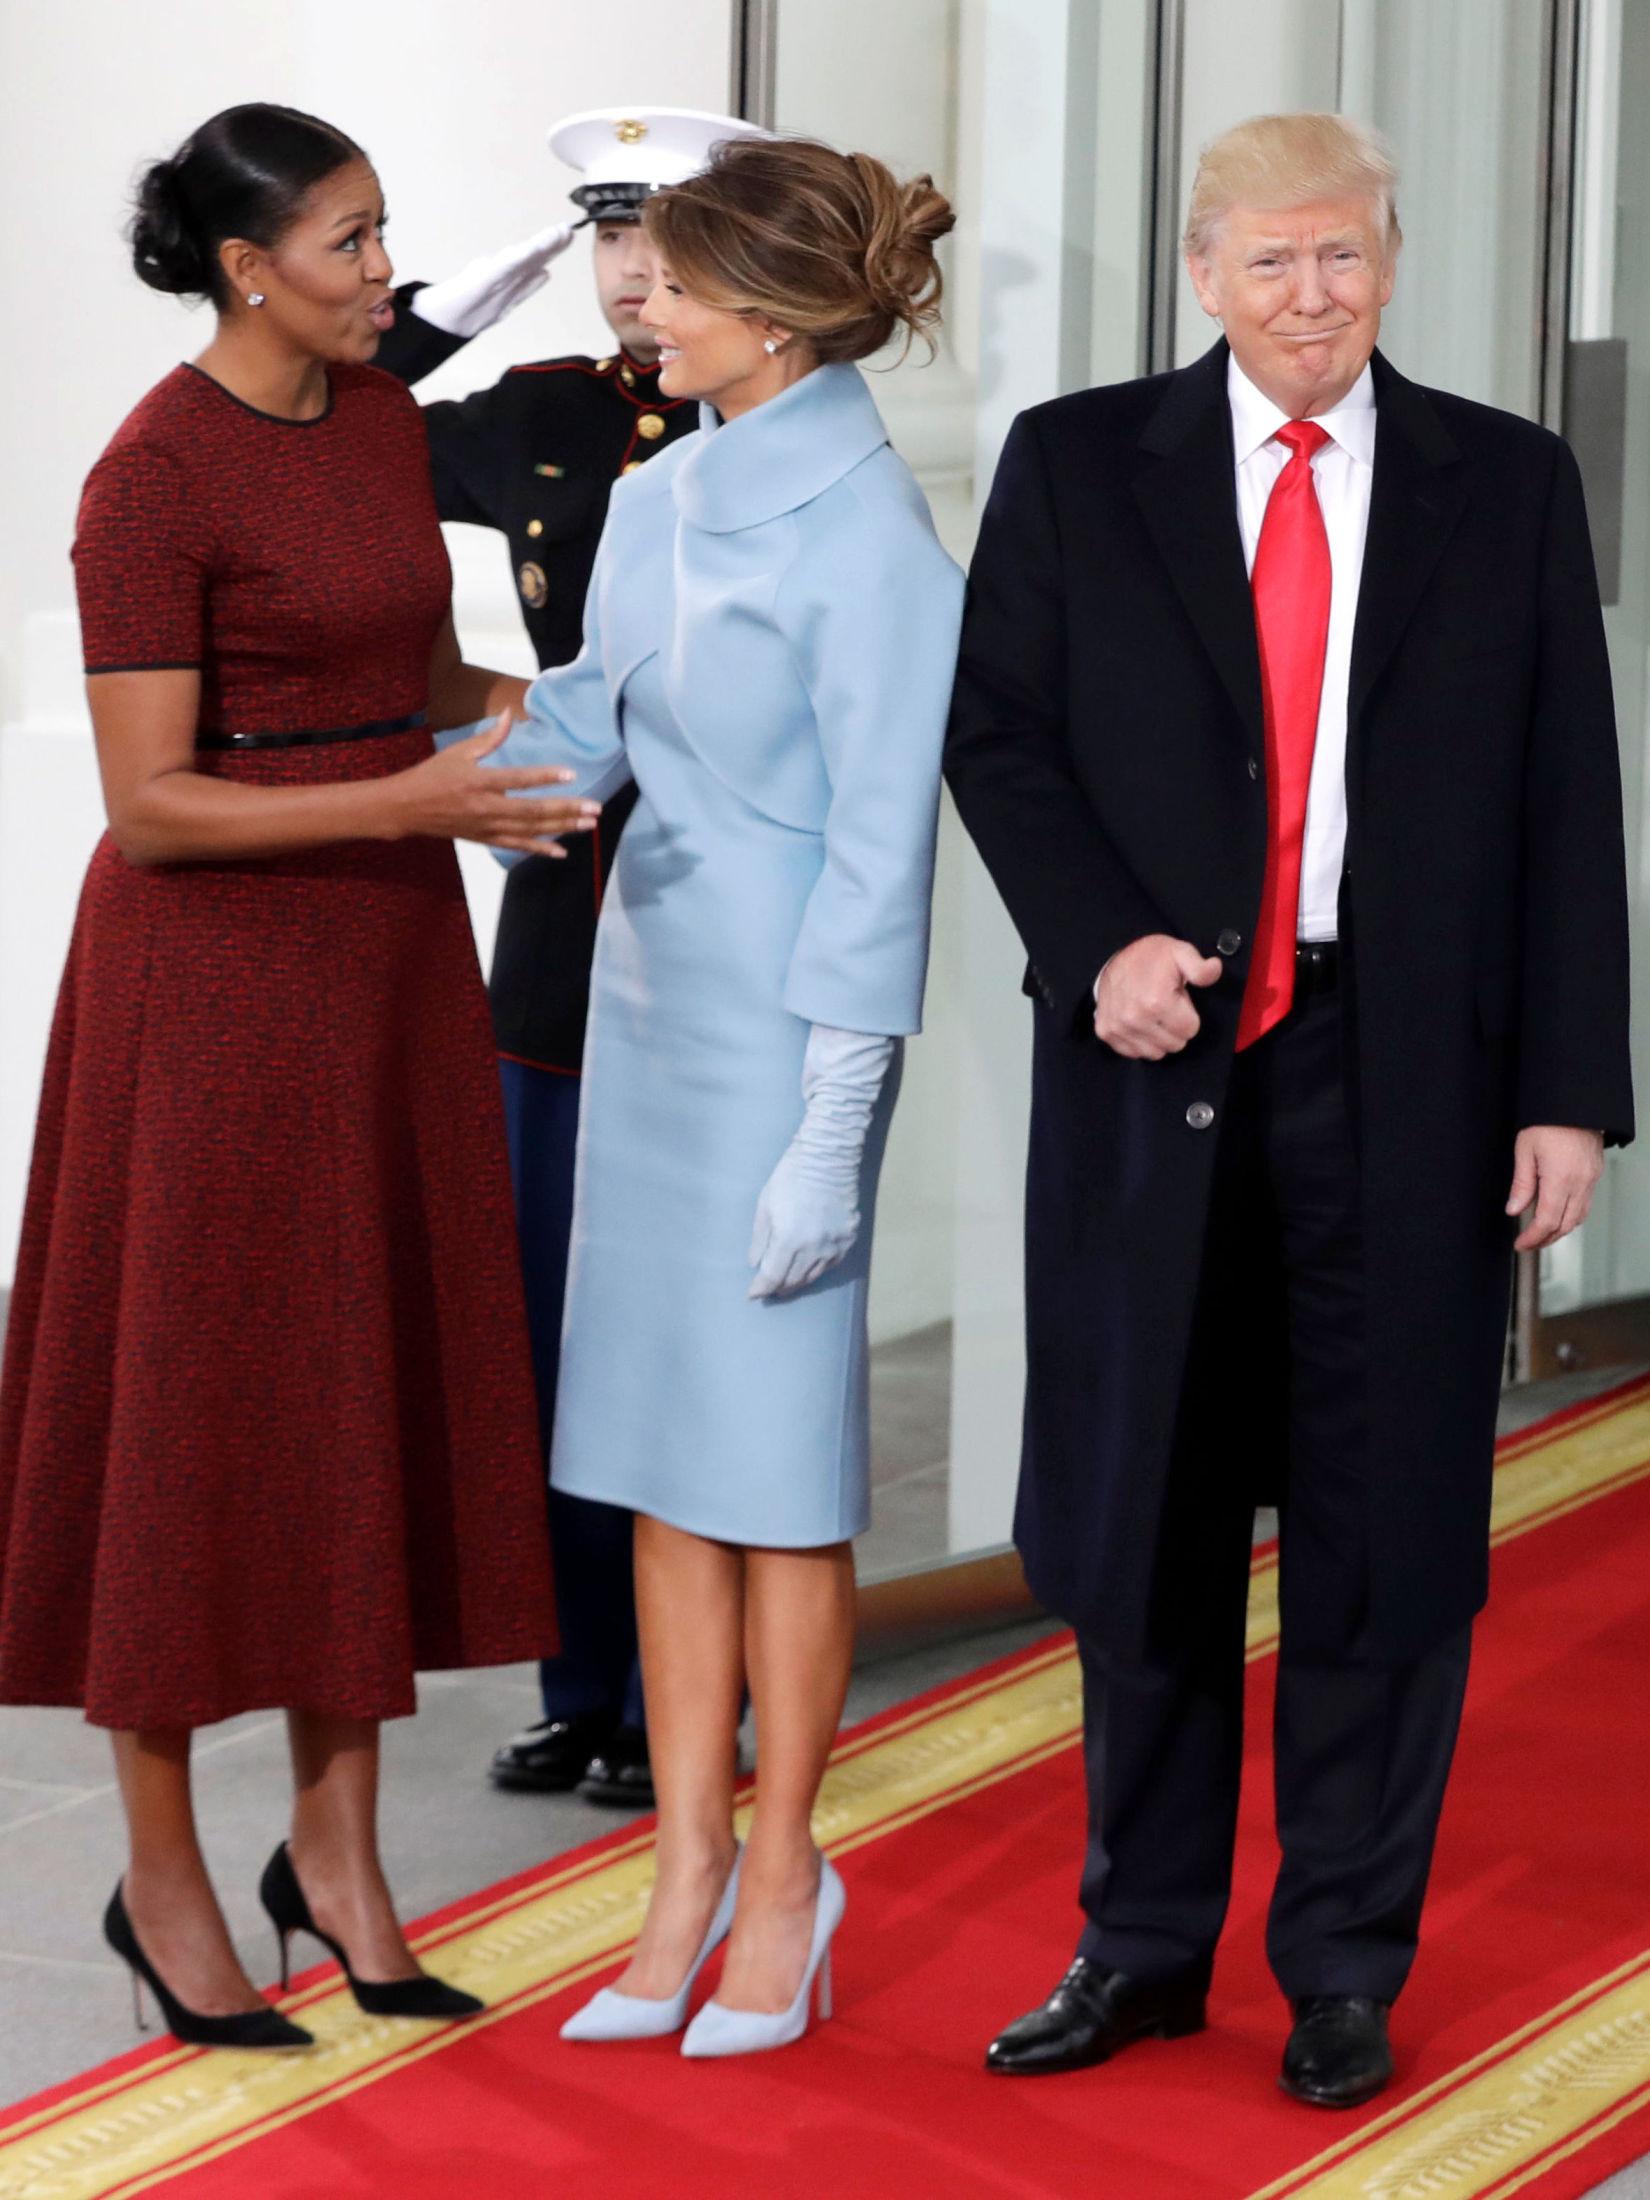 NY ROLLE: Michelle Obama har vært moteekspertenes favoritt. Nå vil det vise seg om Melania oppnår samme effekt med sin luksuriøse stil.